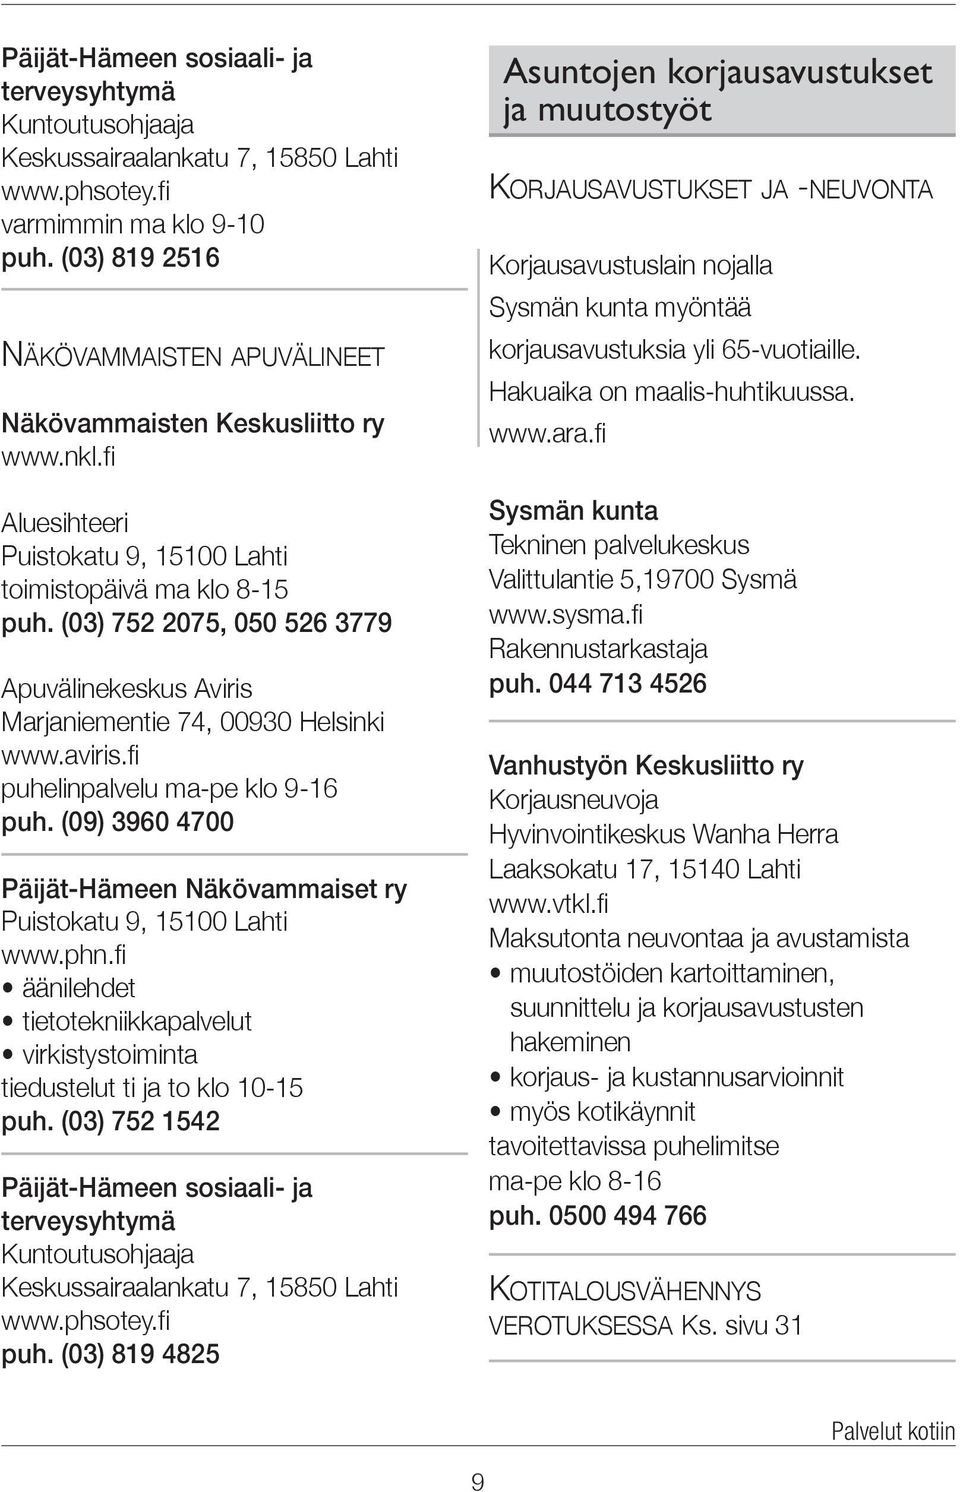 fi puhelinpalvelu ma-pe klo 9-16 puh. (09) 3960 4700 Päijät-Hämeen Näkövammaiset ry Puistokatu 9, 15100 Lahti www.phn.